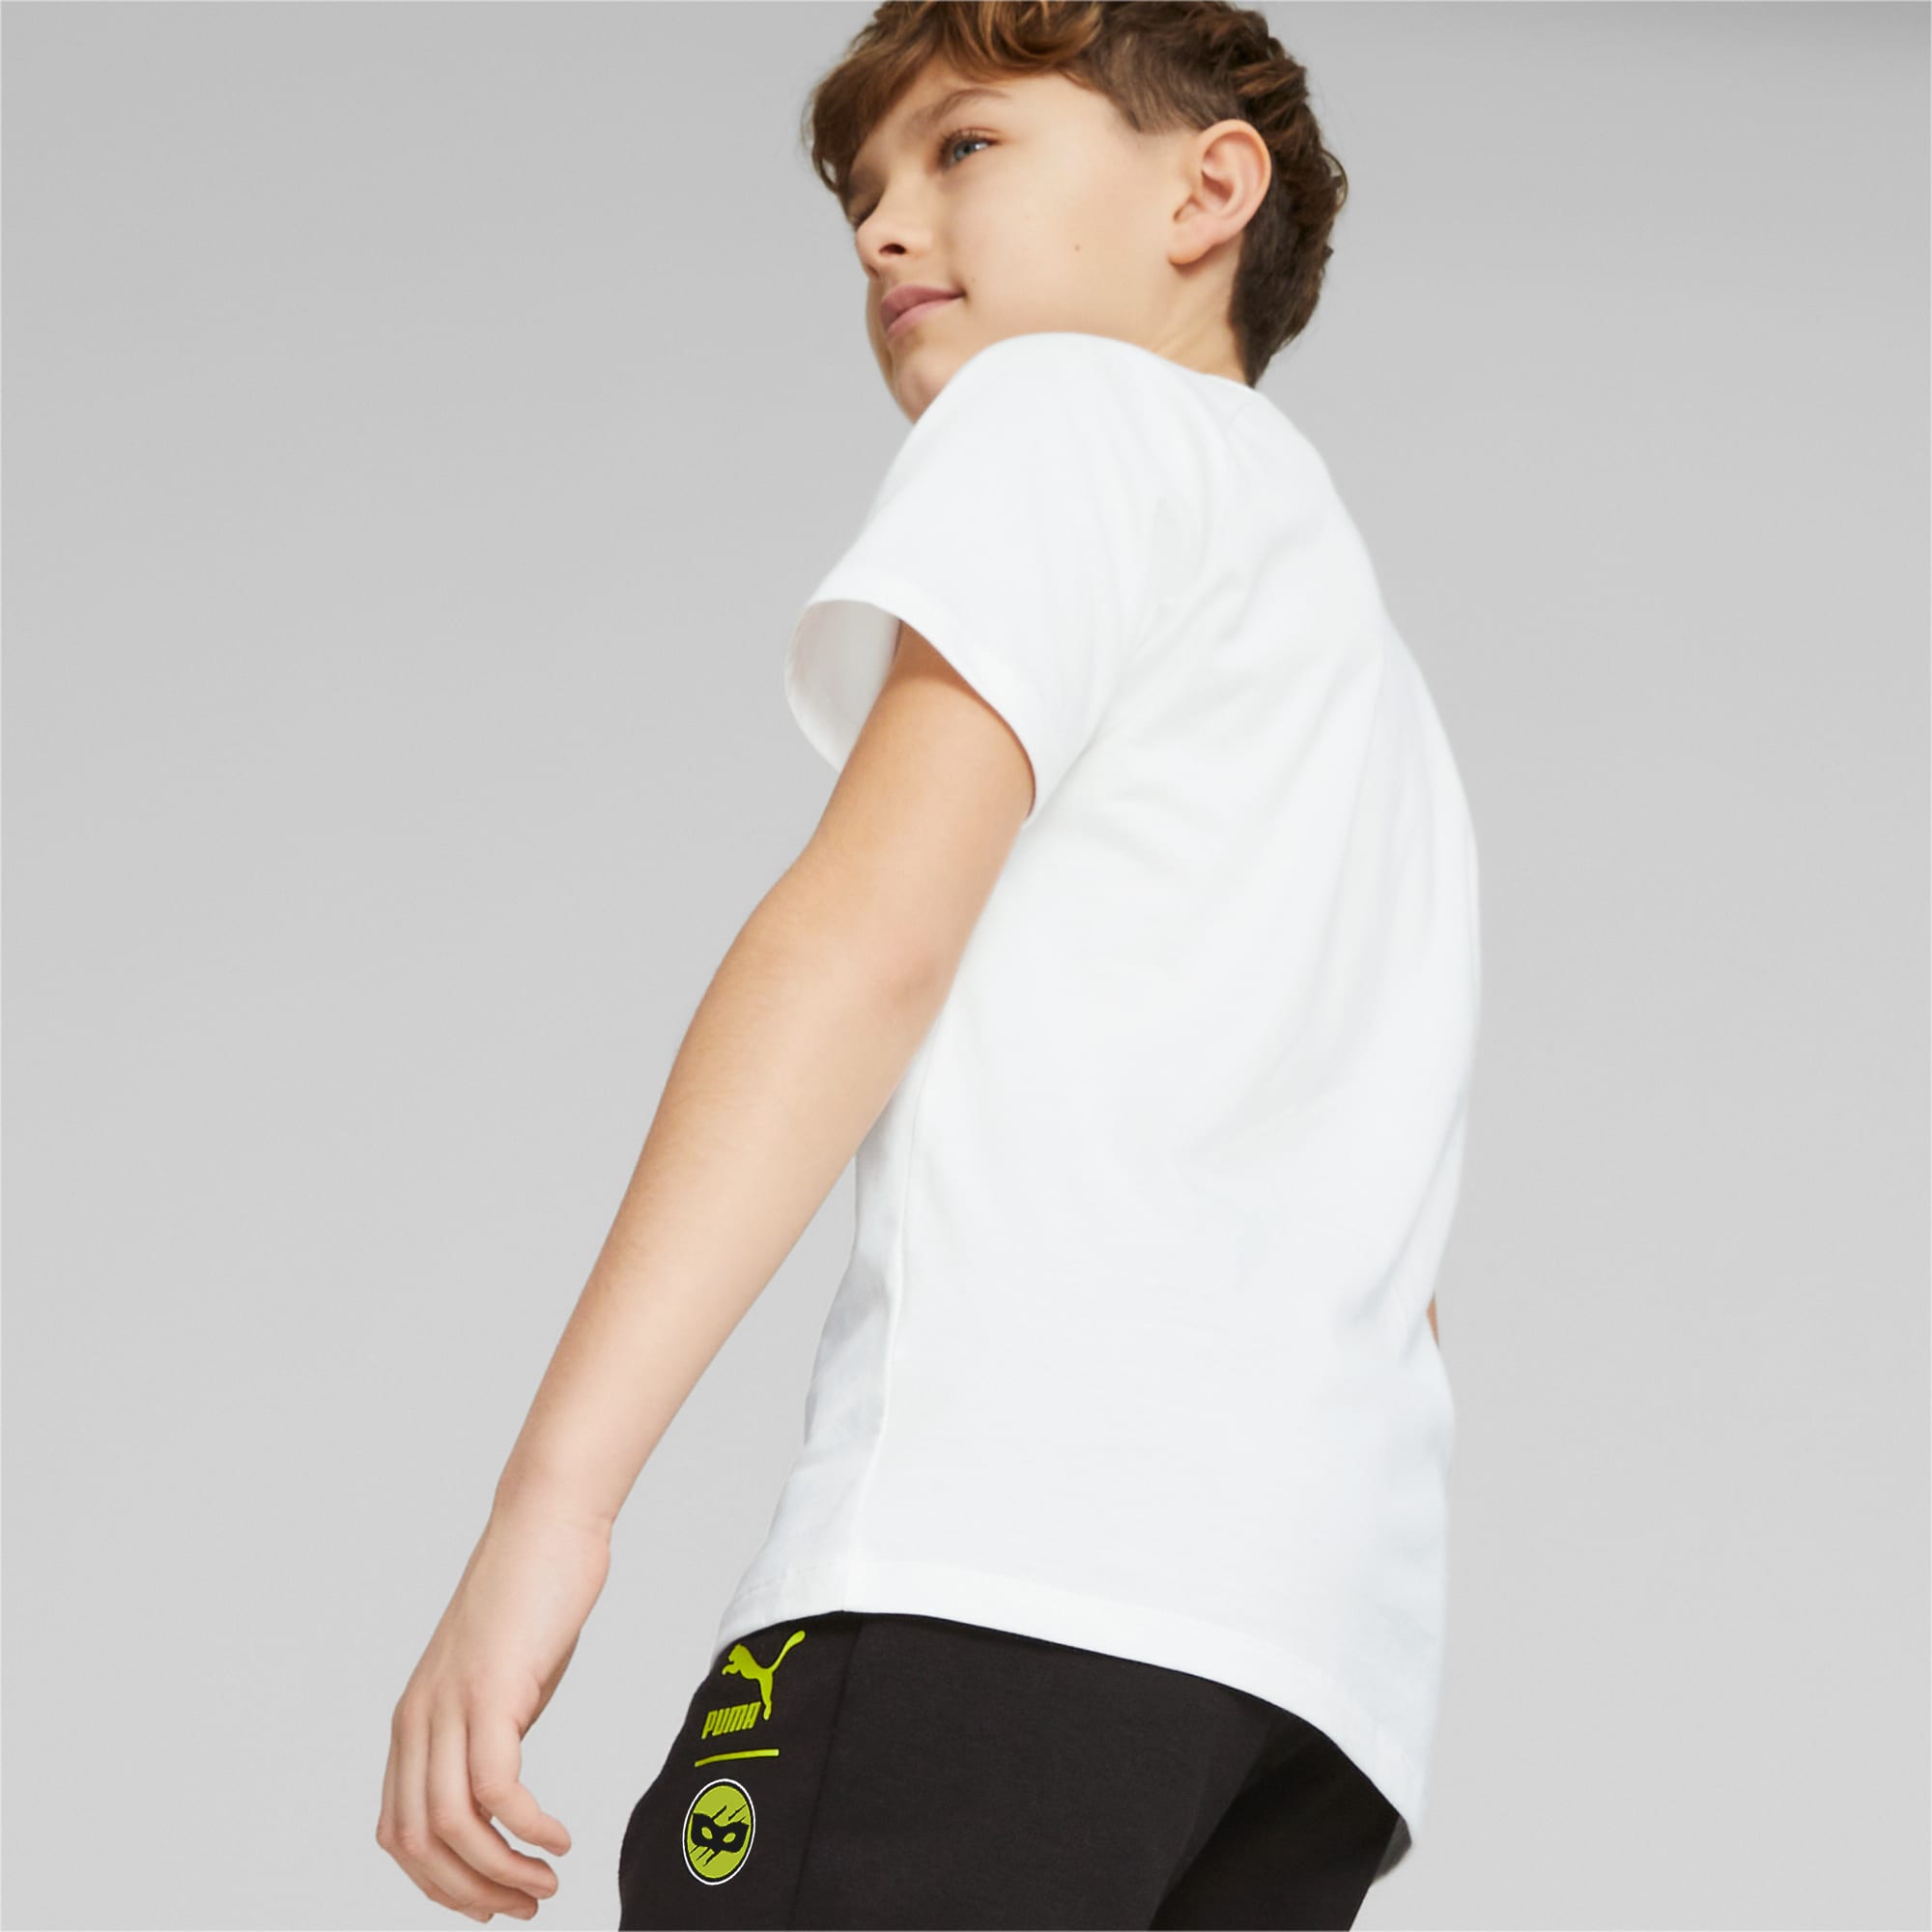 PUMA X MIRACULOUS T-Shirt Teenager Für Kinder, Weiß, Größe: 164, Kleidung